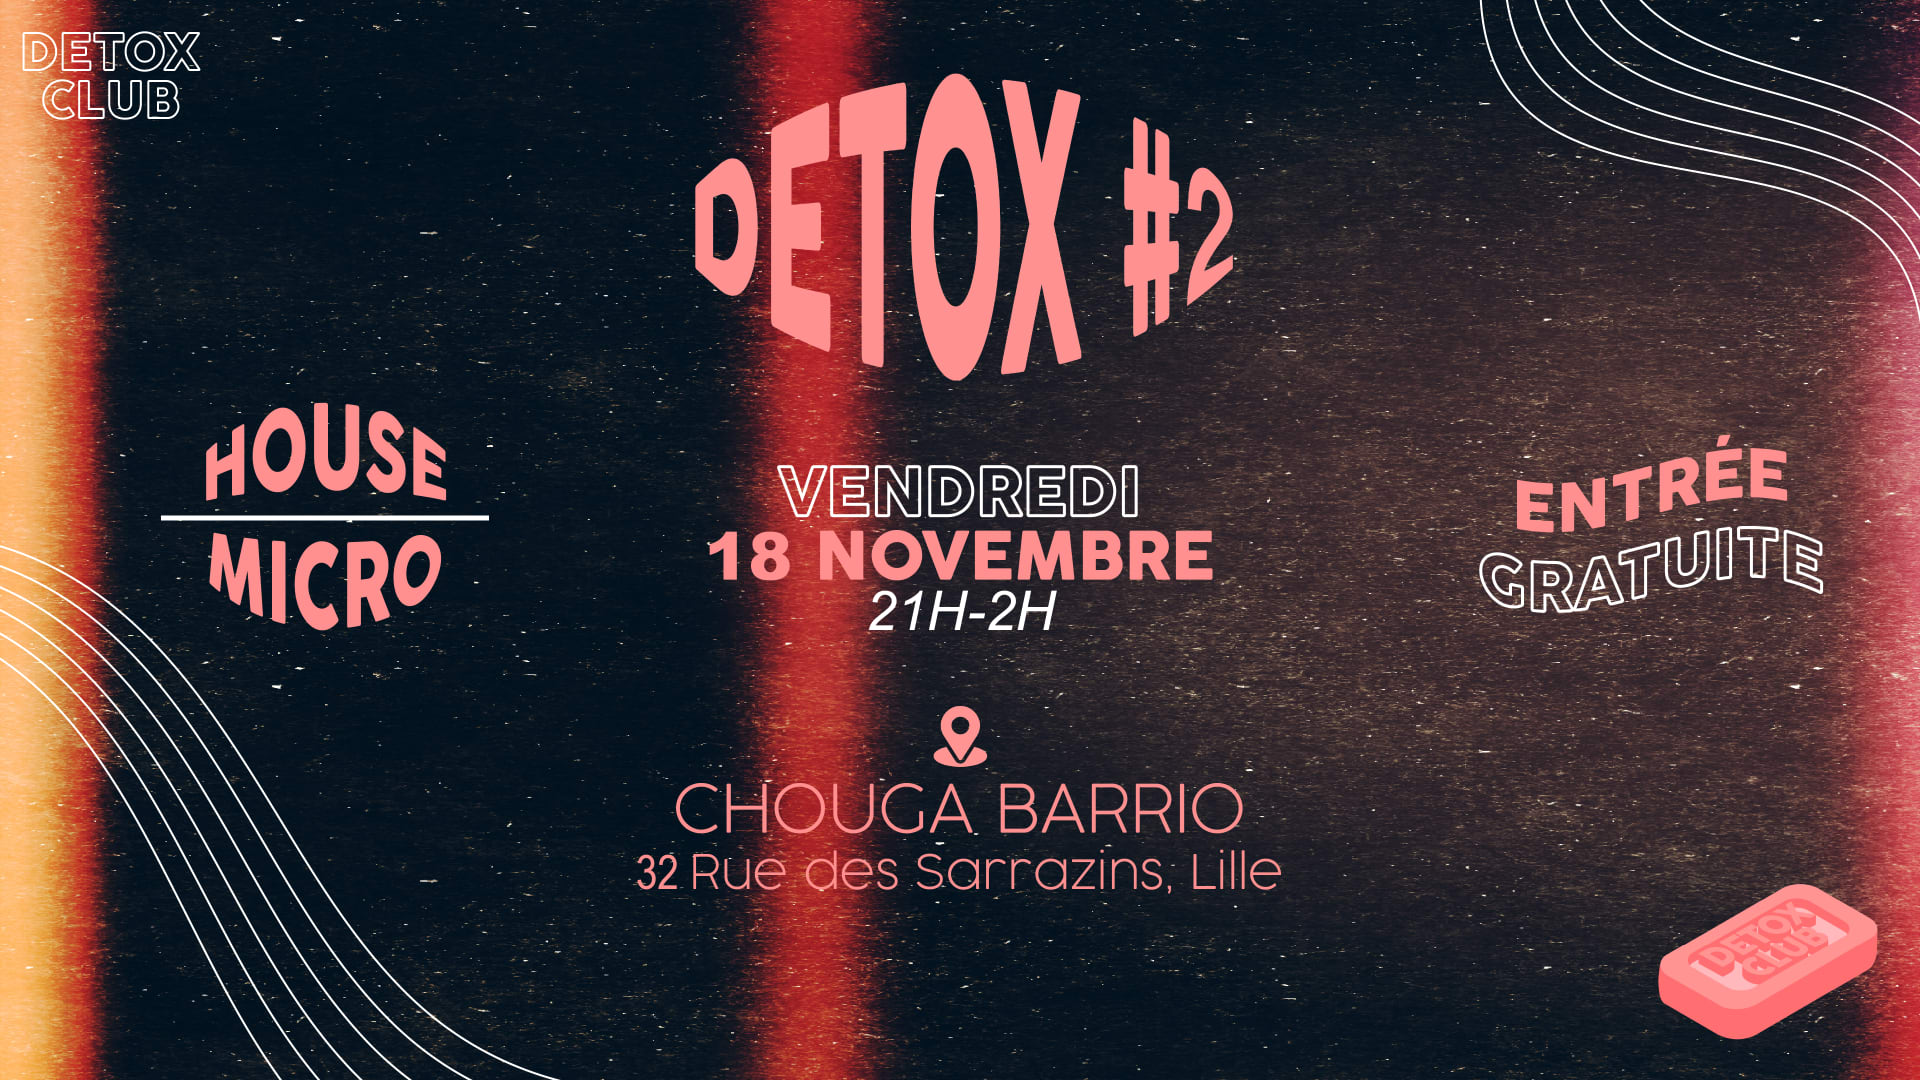 La Détox by Detox Club